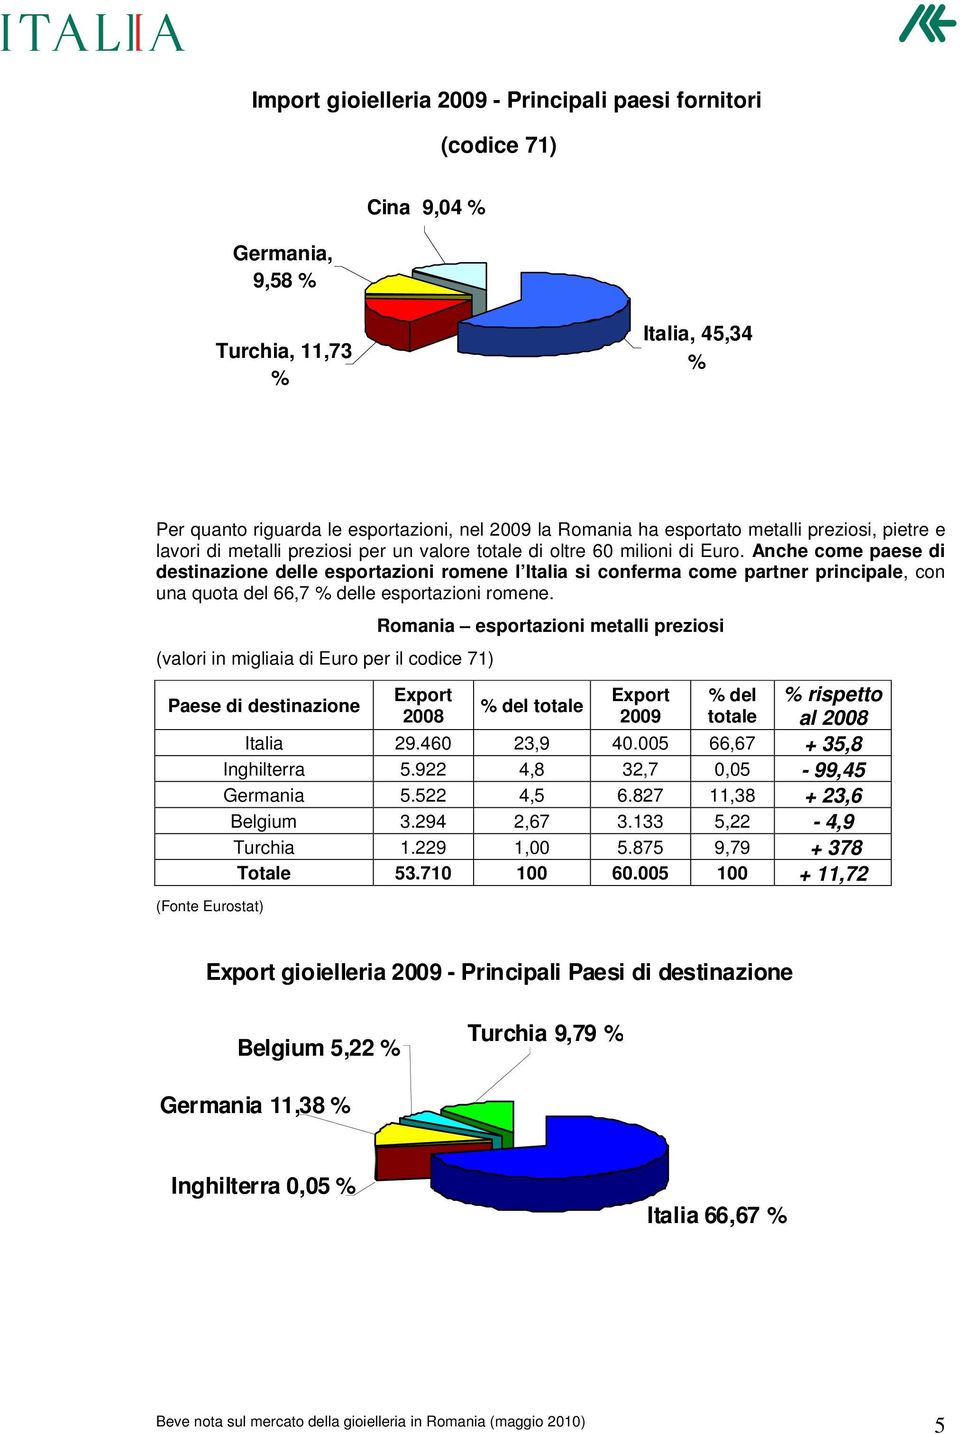 Anche come paese di destinazione delle esportazioni romene l Italia si conferma come partner principale, con una quota del 66,7 % delle esportazioni romene.